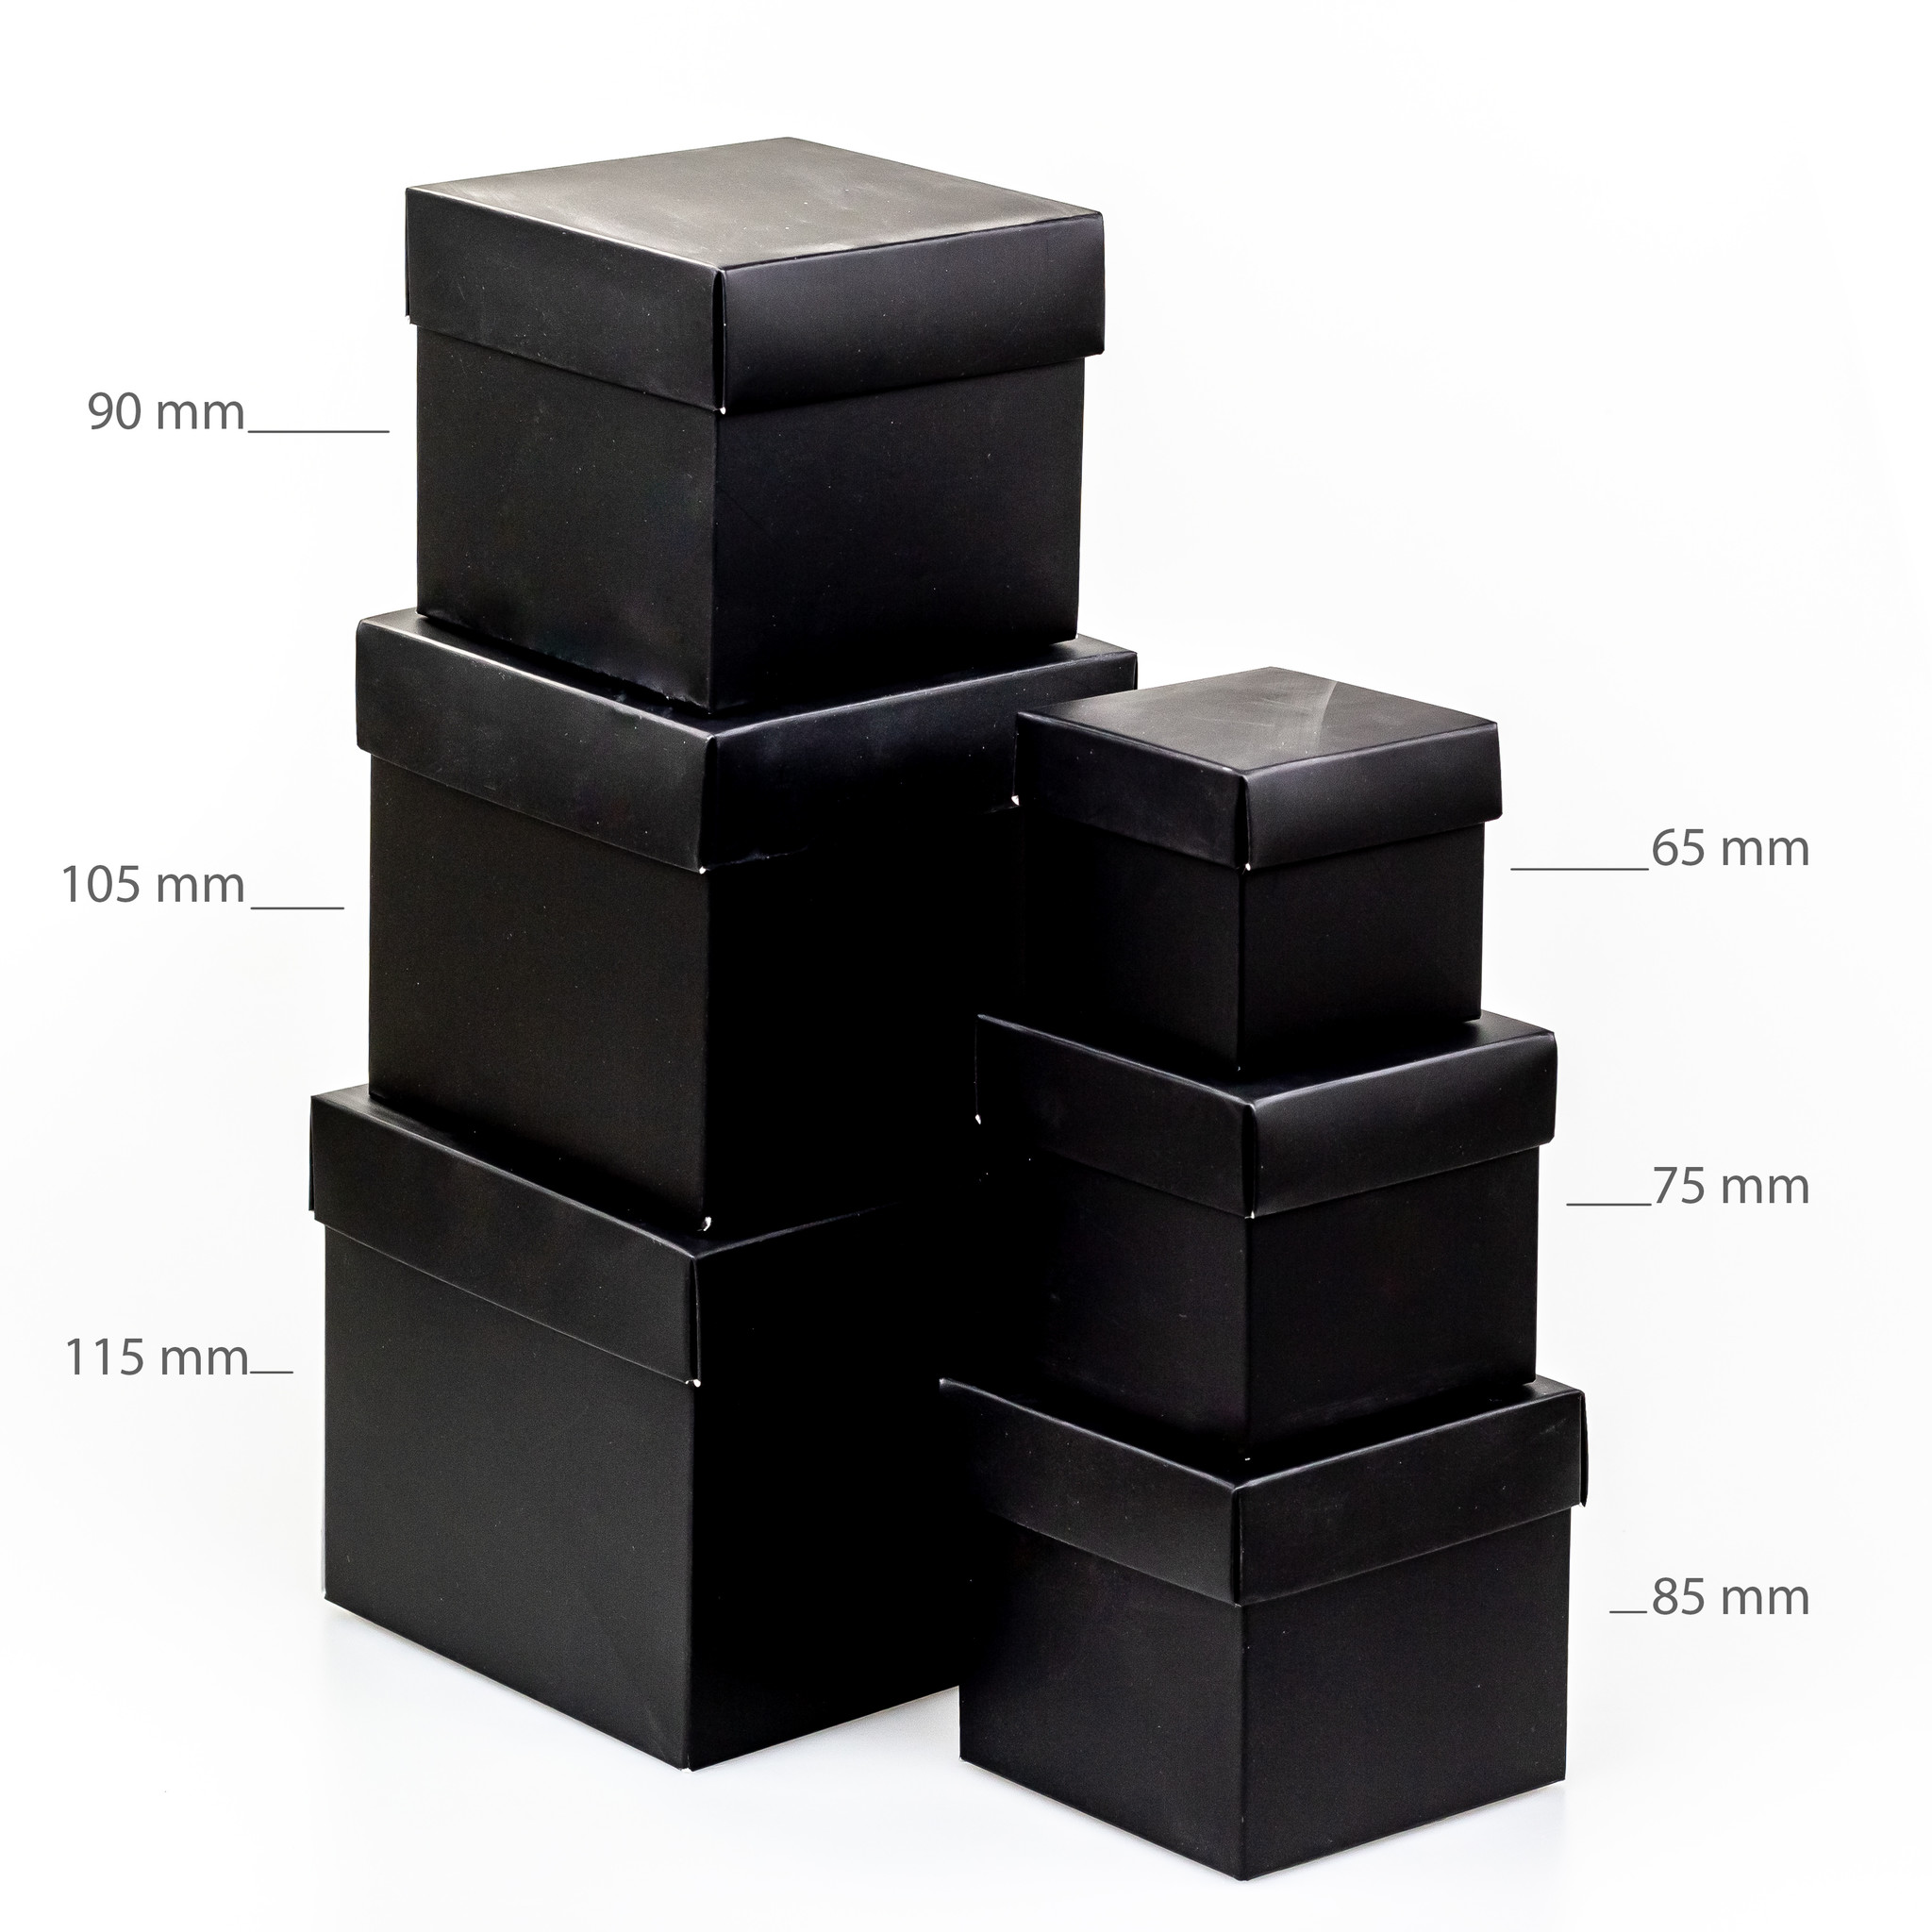 Cubebox - Or brillant